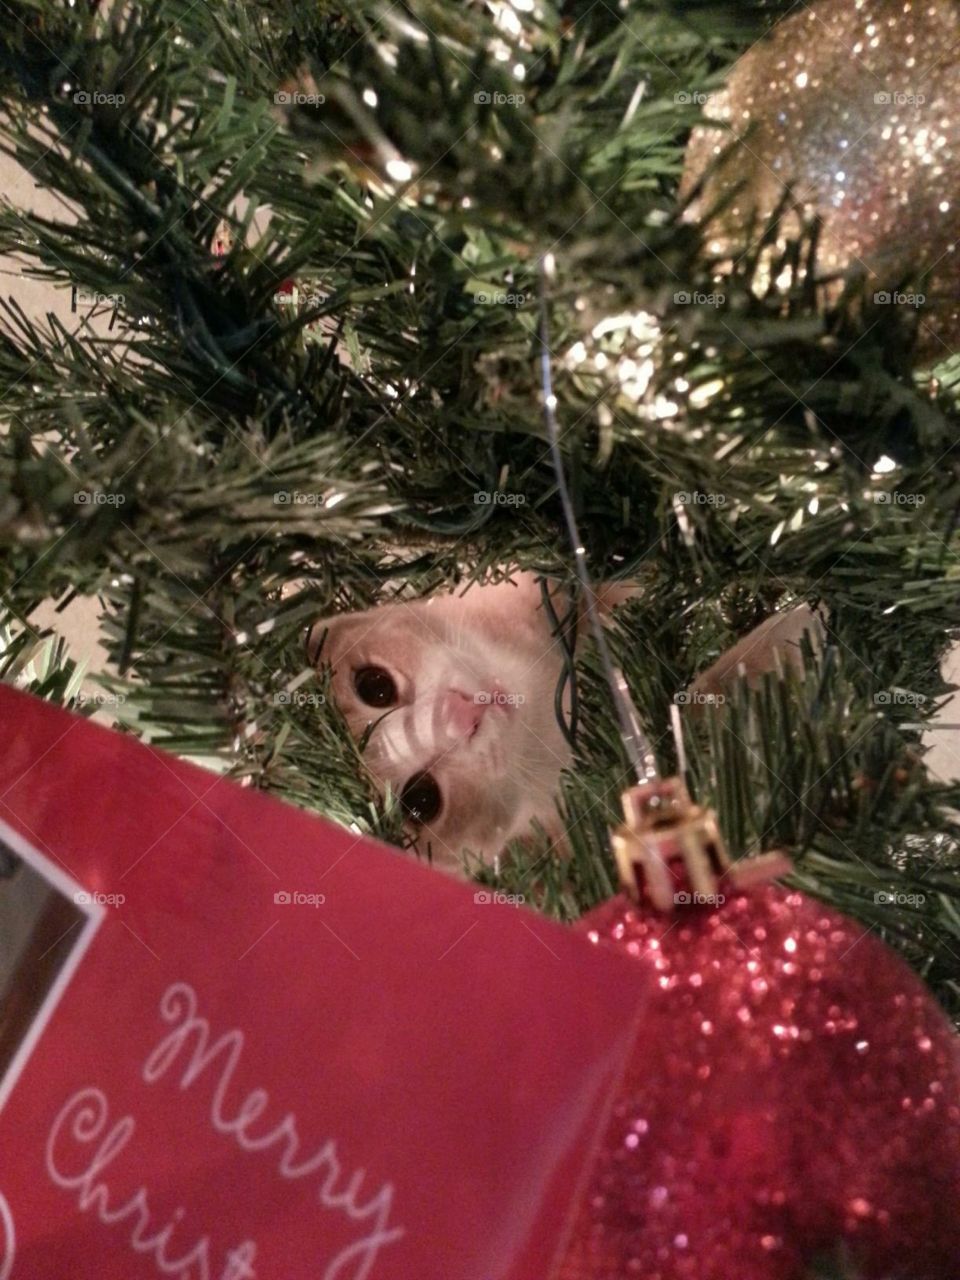 Cat ornament 